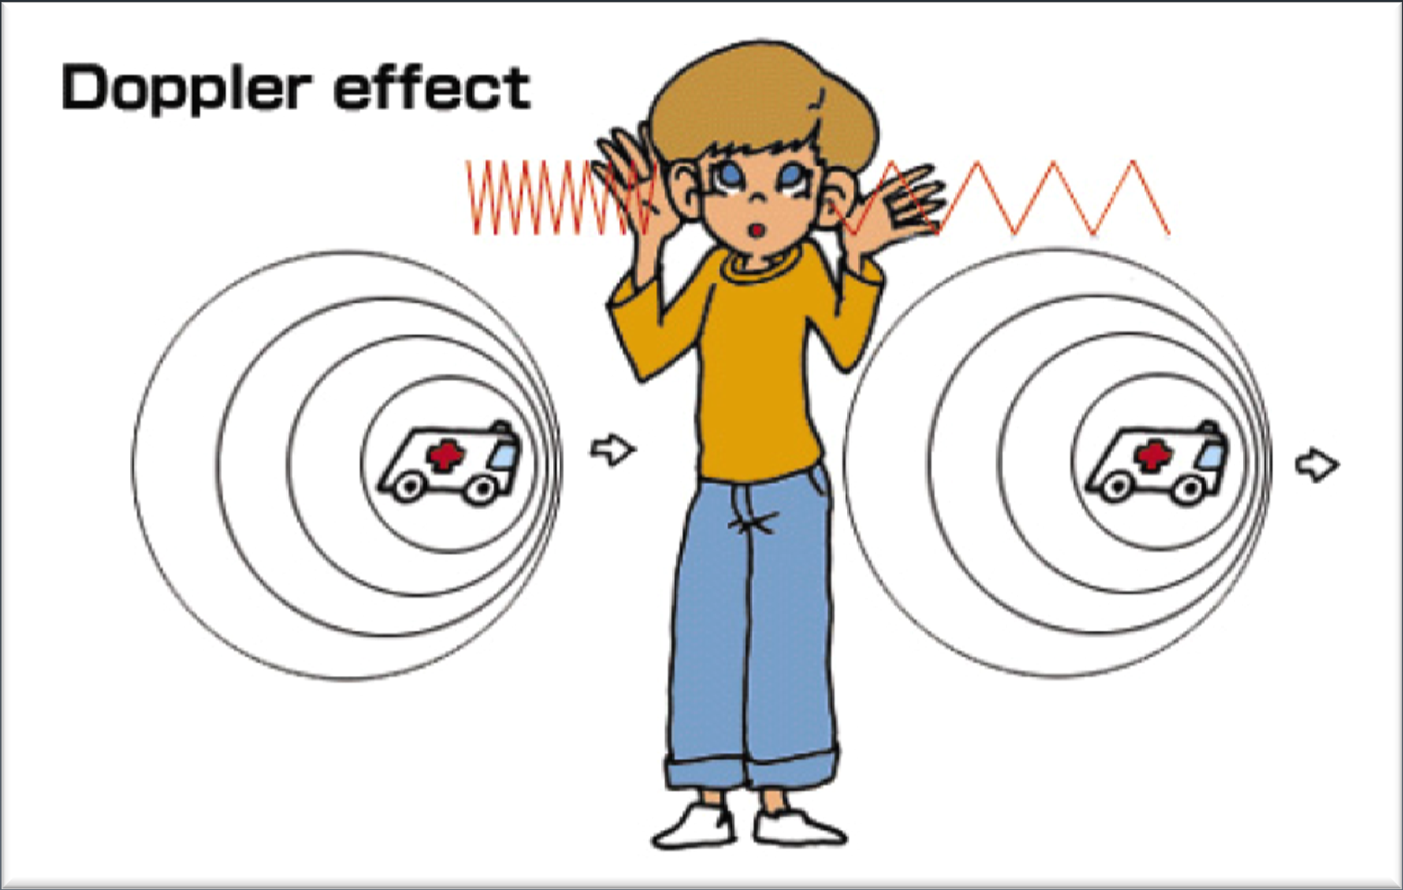 Doppler Etkisi: Doppler etkisi (vea Doppler kaması), adını ünlü bilim insanı ve matematikçi Christian Andreas Doppler'den almakta olup, kısaca dalga özelliği gösteren